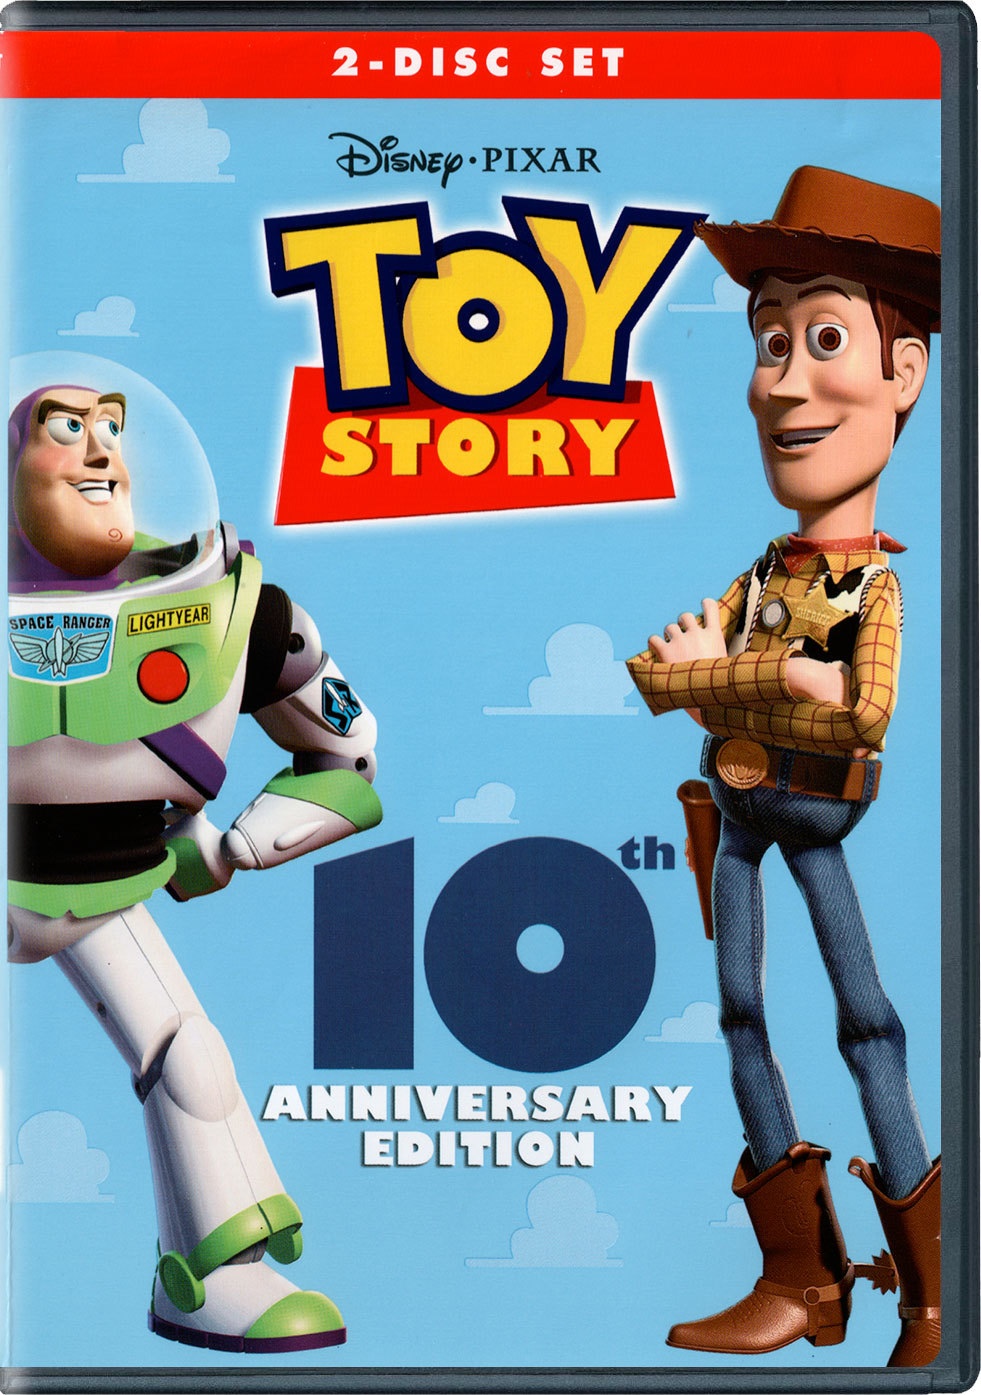 Toy Story (video) | Disney Wiki | FANDOM powered by Wikia